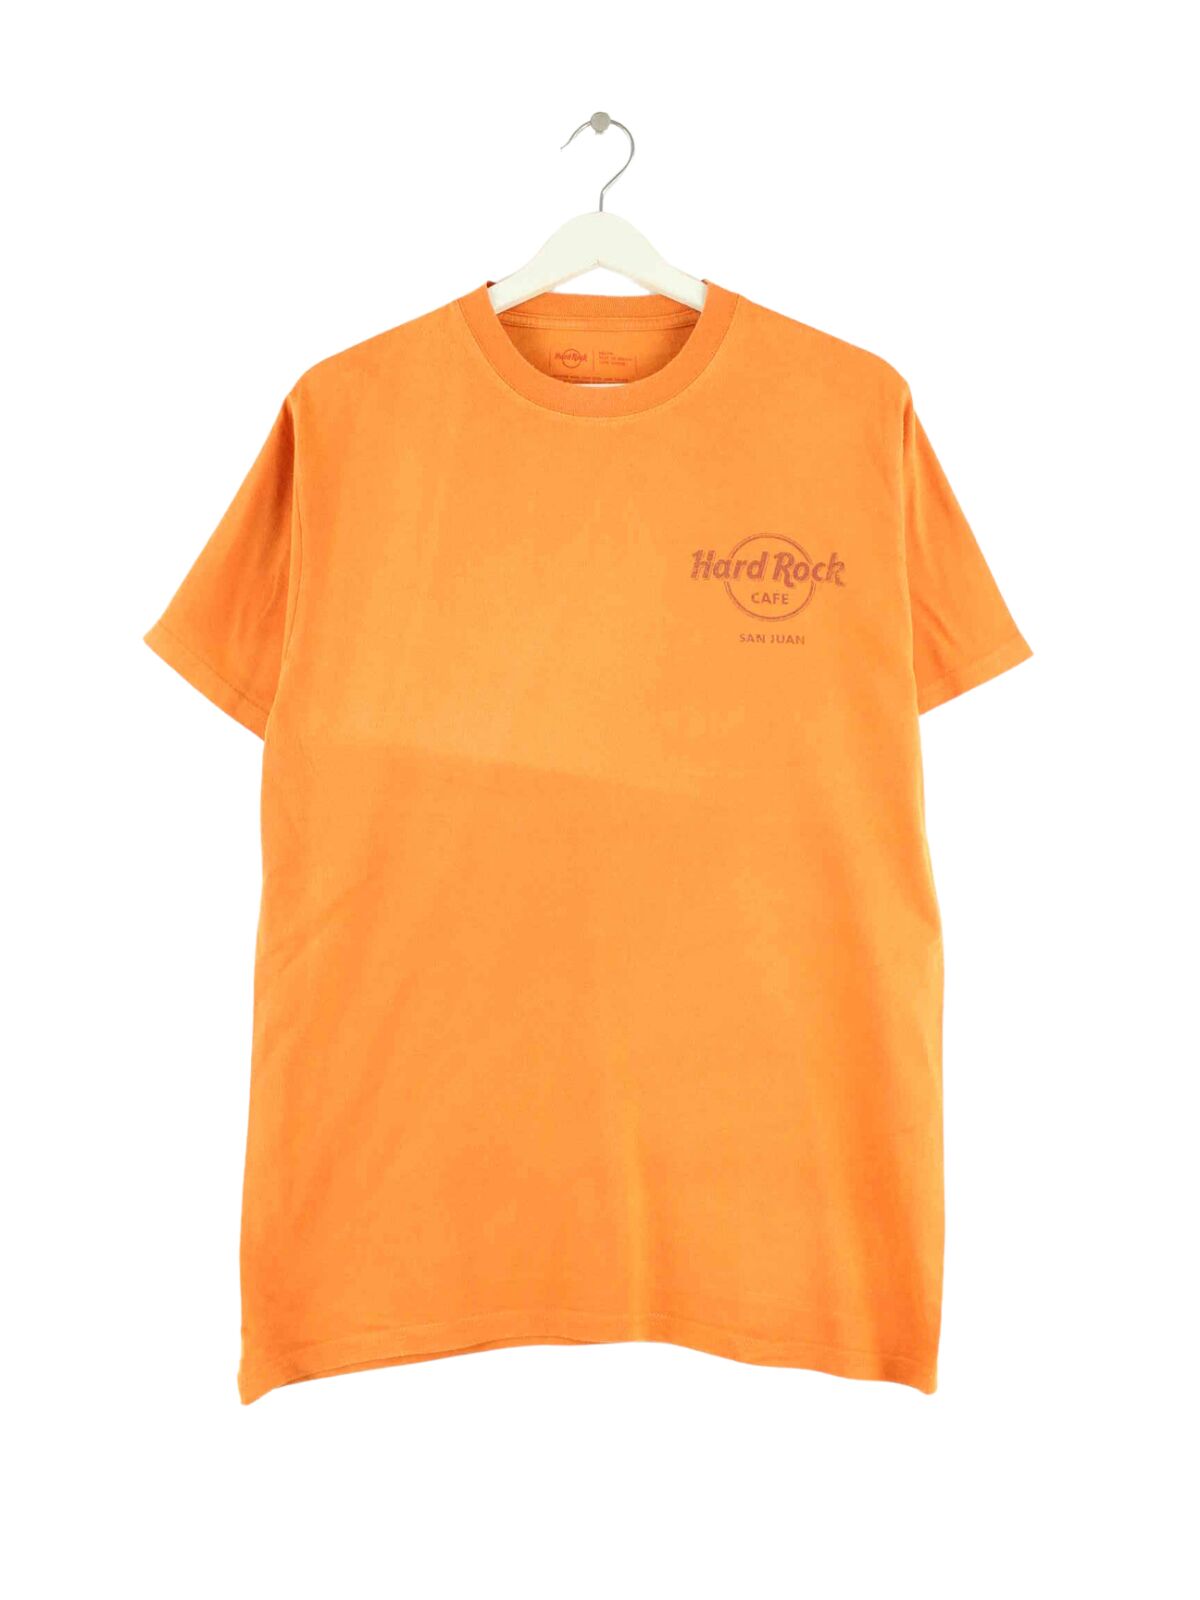 Hard Rock Cafe San Juan Print T-Shirt Orange M (front image)